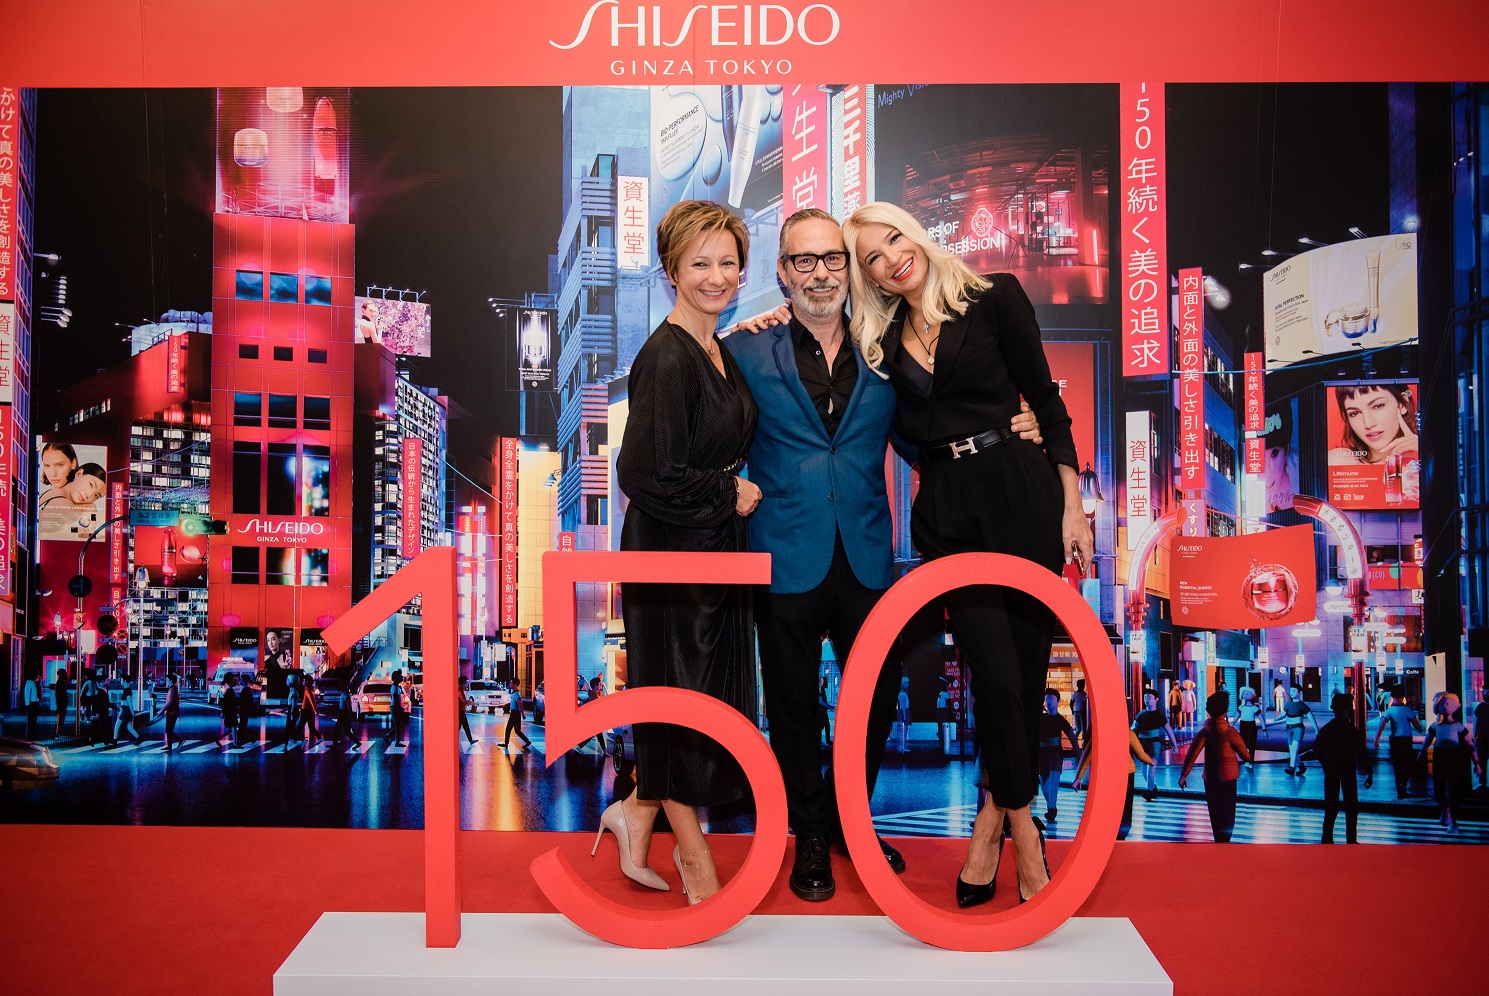 Η Shiseido γιορτάζει 150 χρόνια ιαπωνικής καινοτομίας και ομορφιάς με την έκθεση «Life & Beauty Experience»